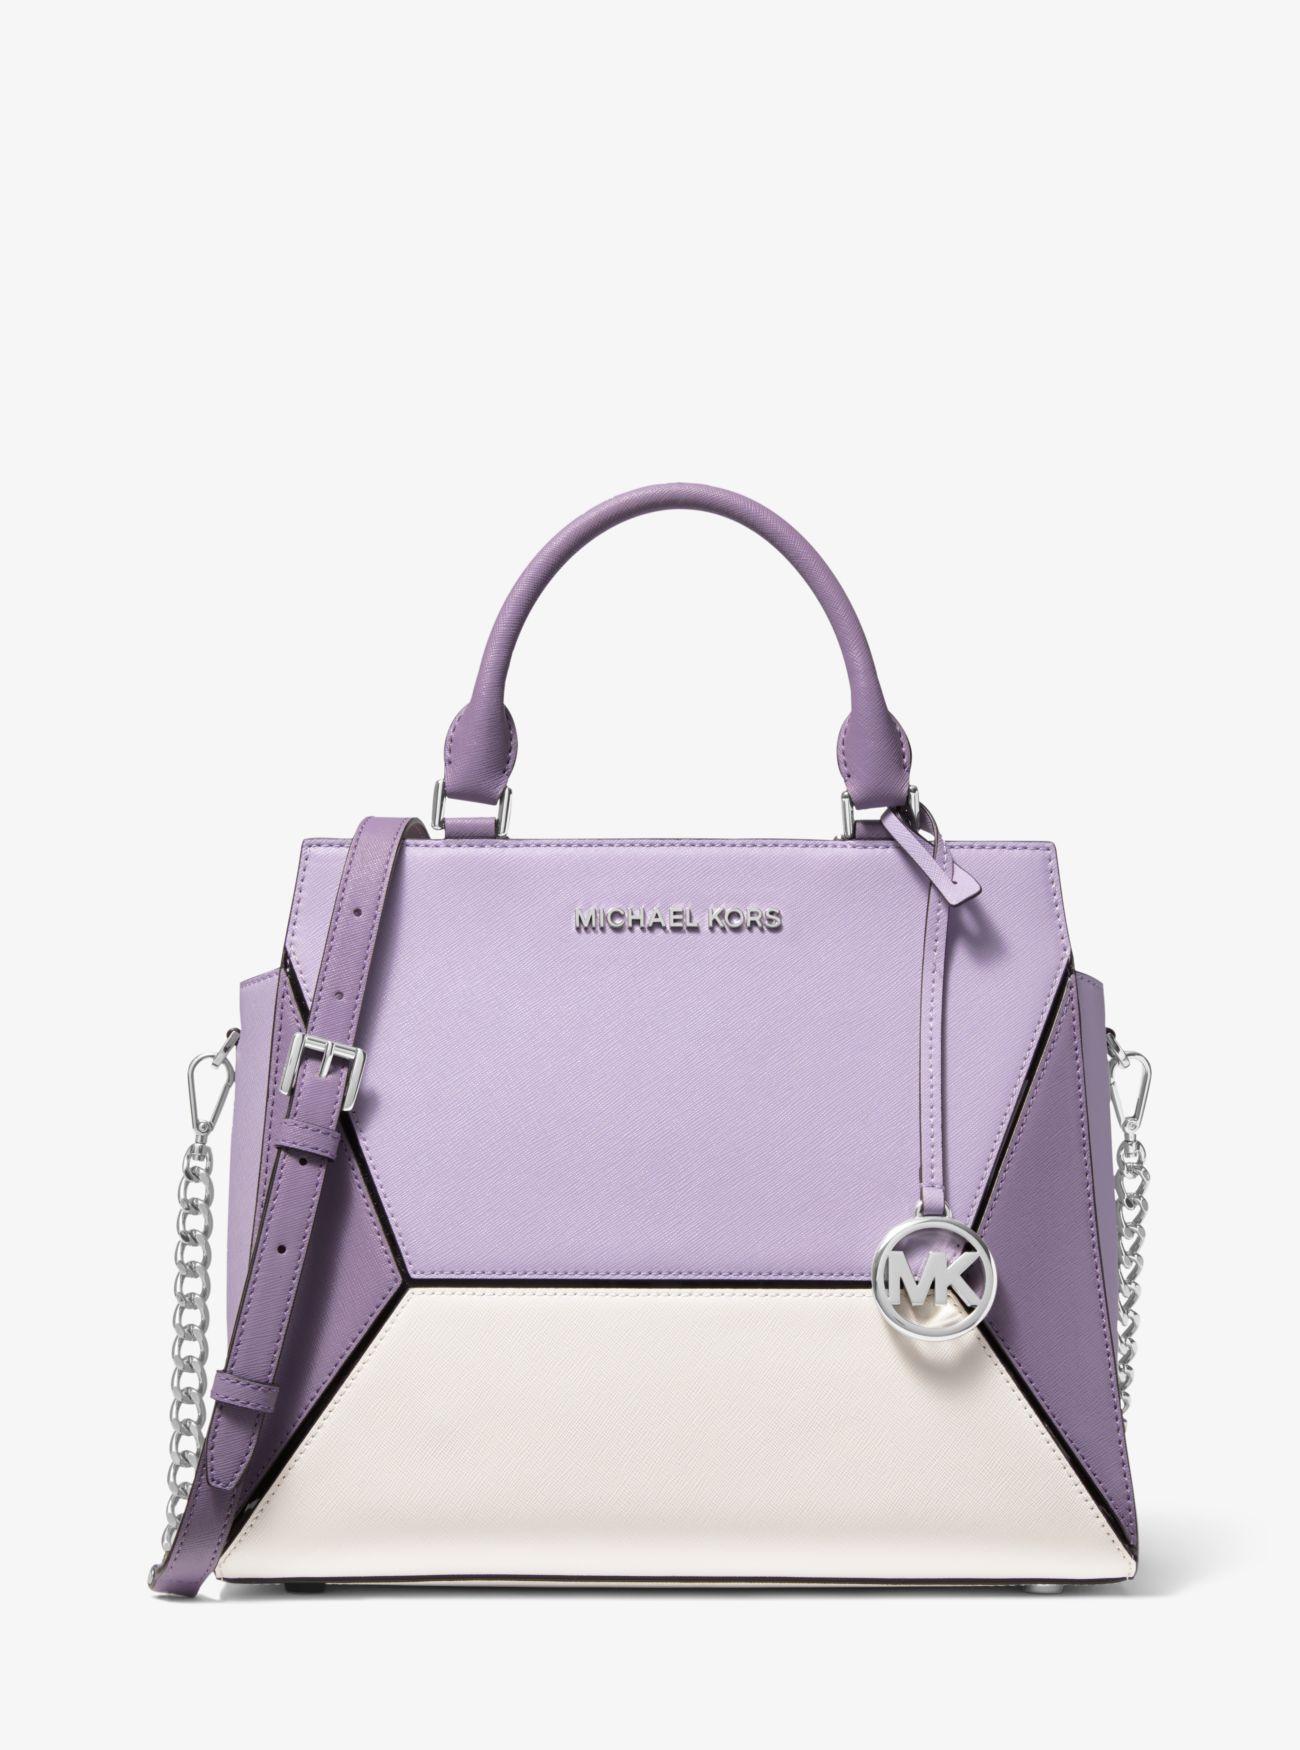 MK purple handbag